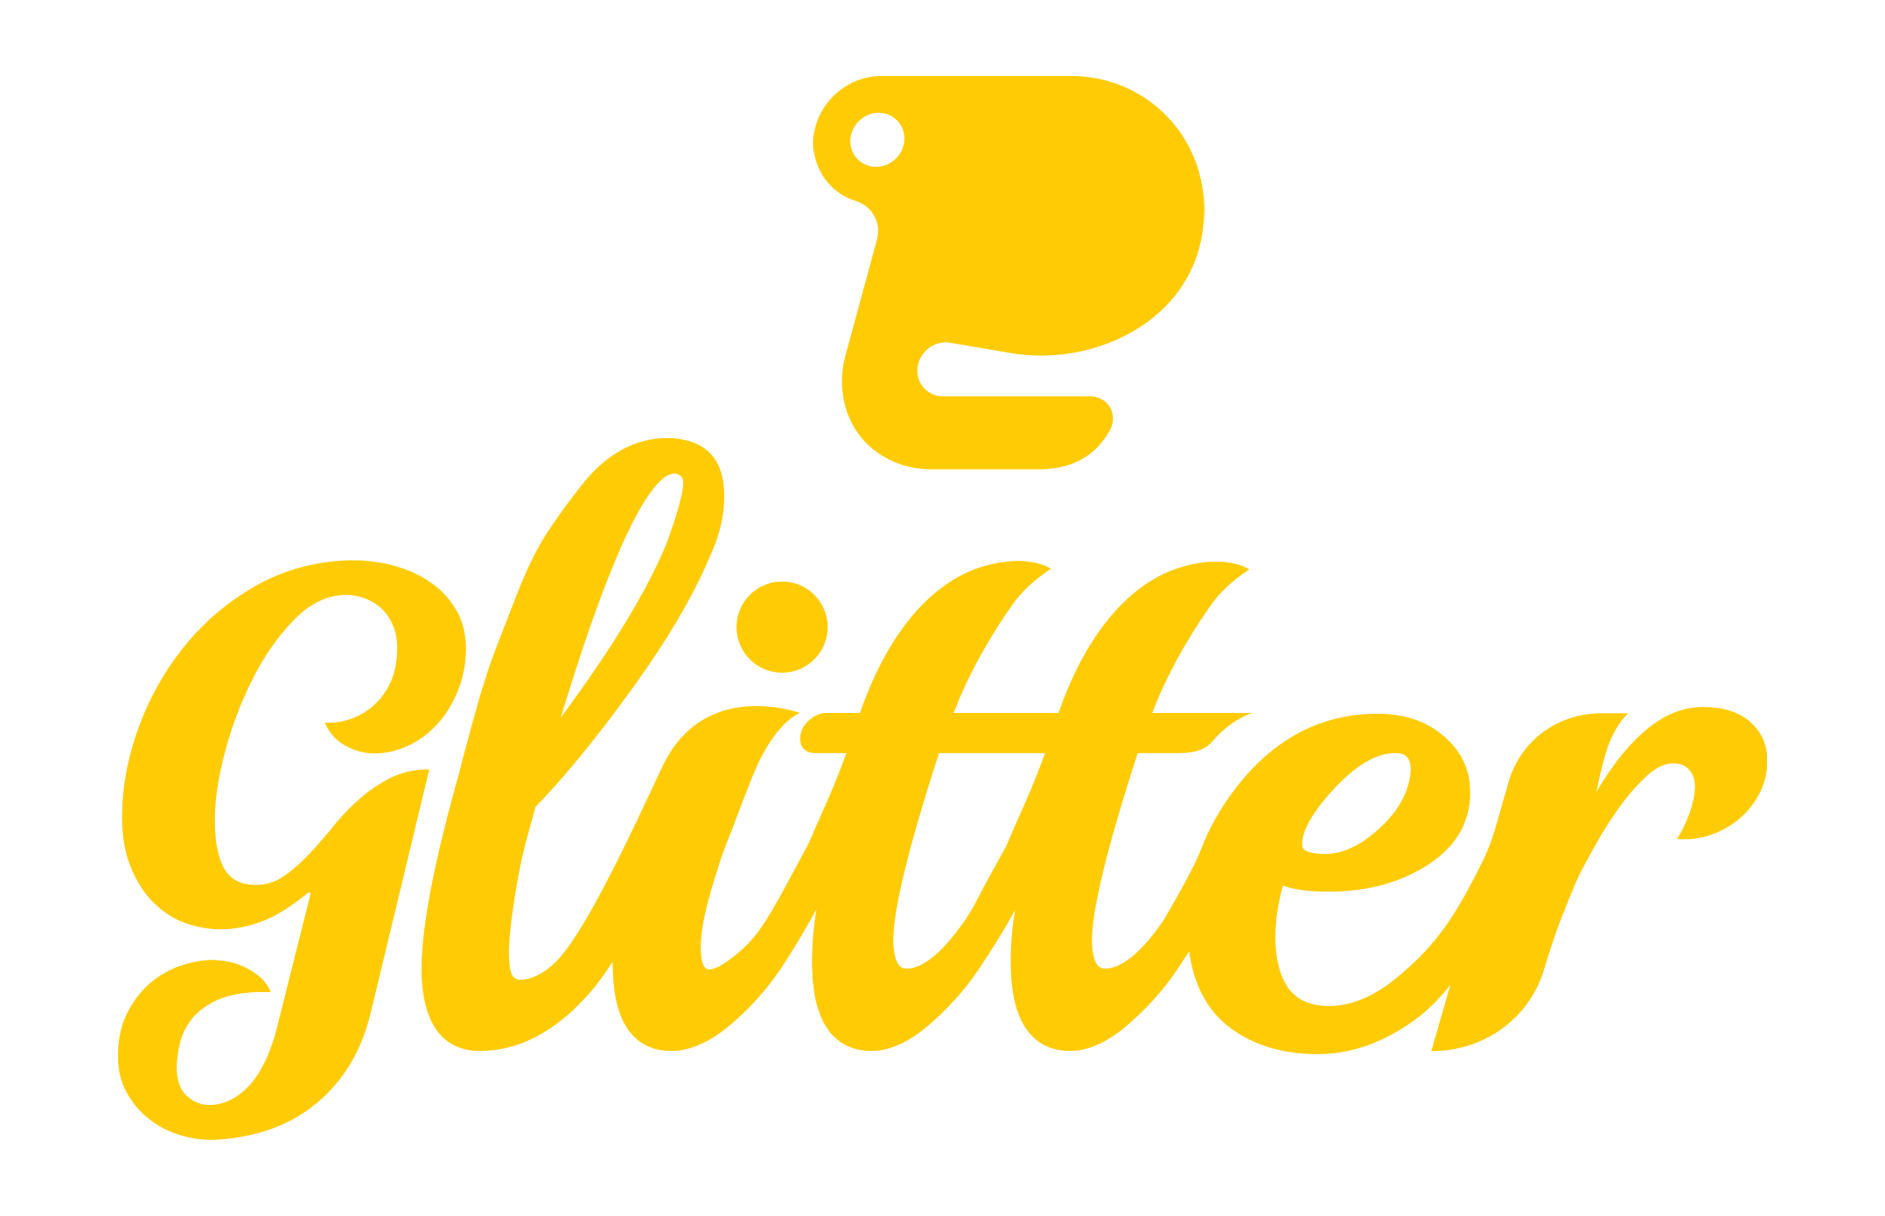 Glitter Graphics Logo - Glitter Advertising - Glitter Advertising web site